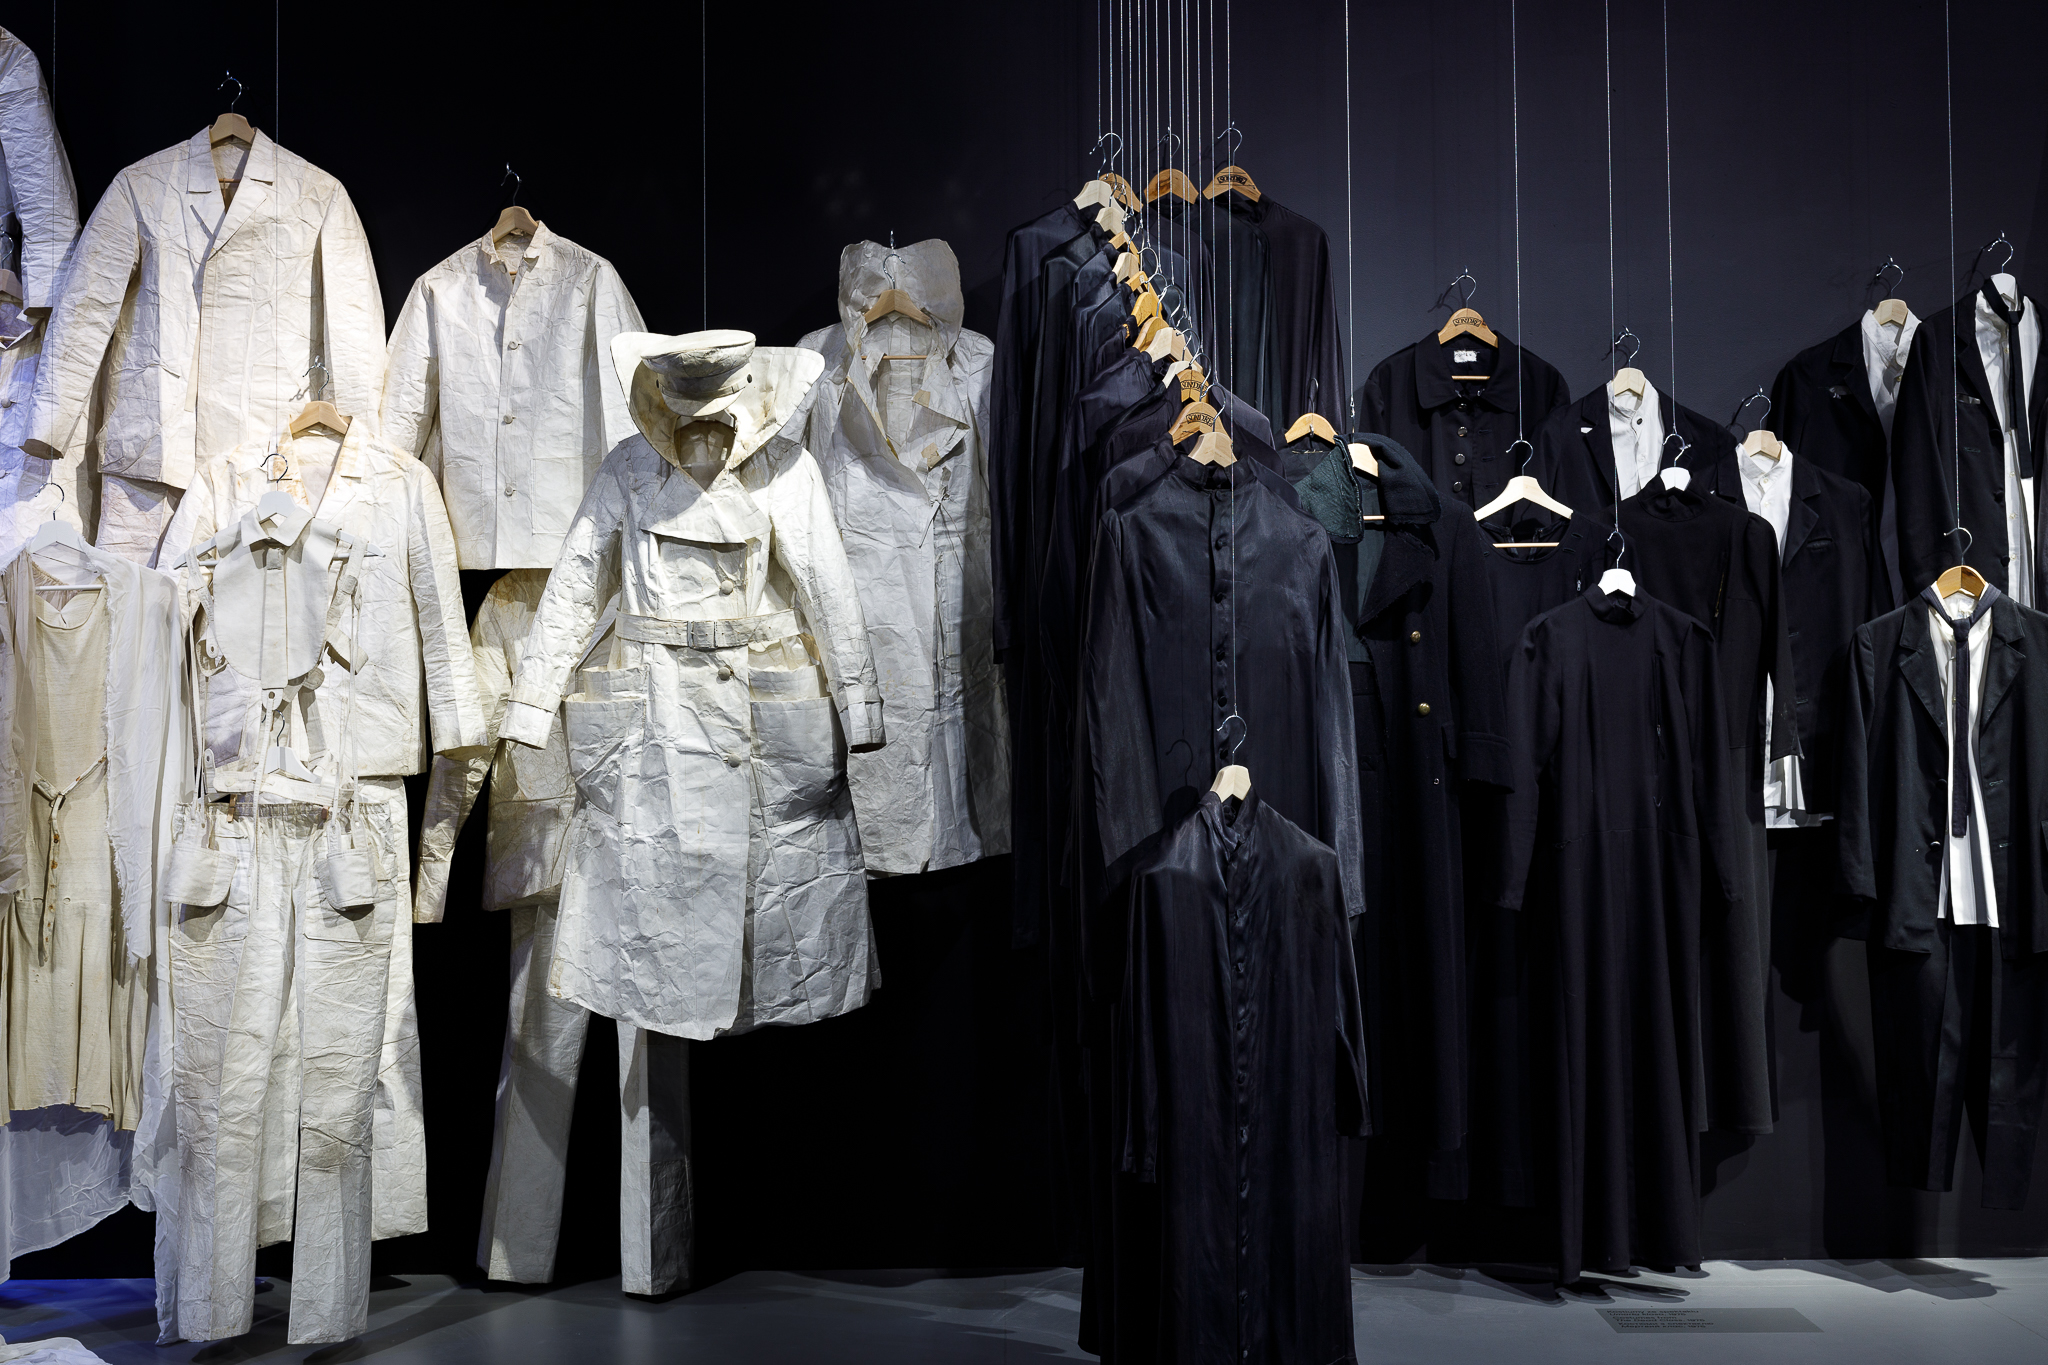 Zdjęcie z wystawy "Osobiste. Kostiumy teatralne Kantora". Z lewej strony wisi kilka białych kostiumów. Po prawej wiszą czarne szaty na drewnianych wieszakach